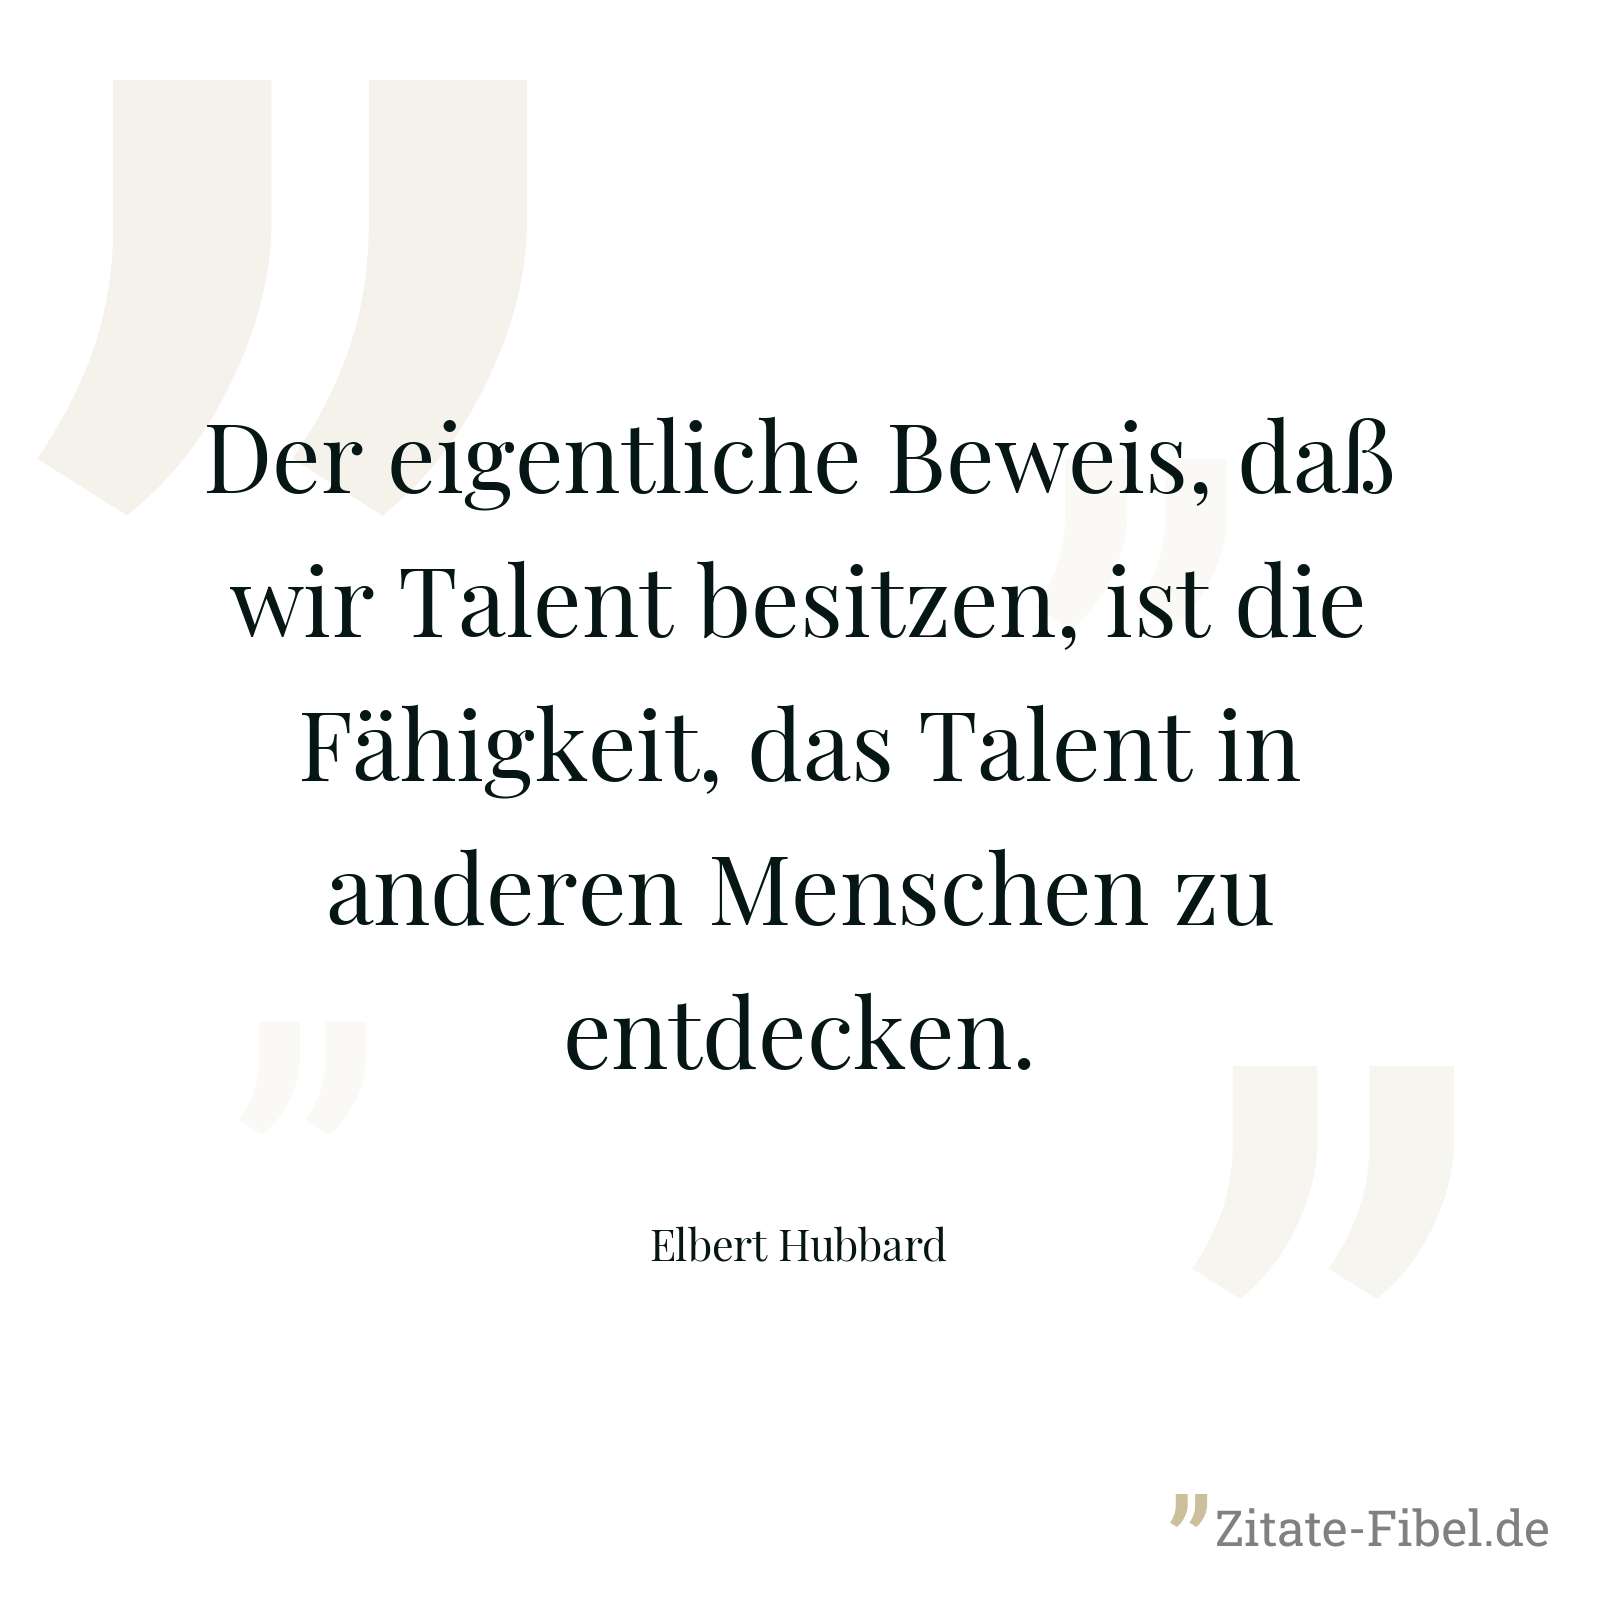 Der eigentliche Beweis, daß wir Talent besitzen, ist die Fähigkeit, das Talent in anderen Menschen zu entdecken. - Elbert Hubbard